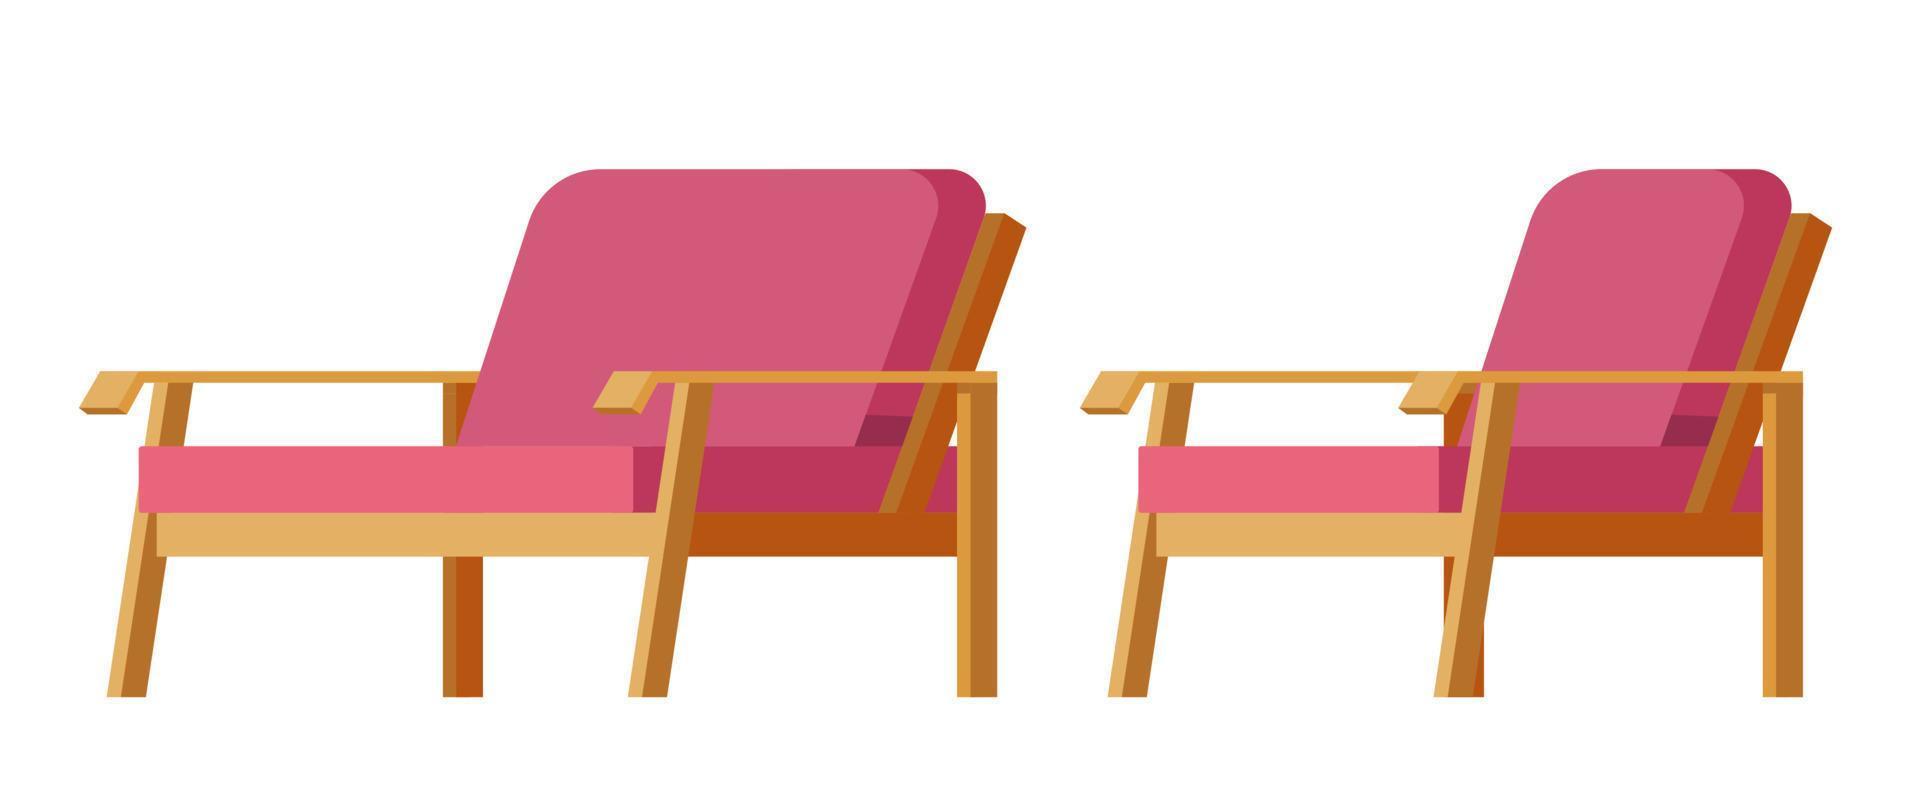 Sofa und Sessel für Außendesign im Freien vektor